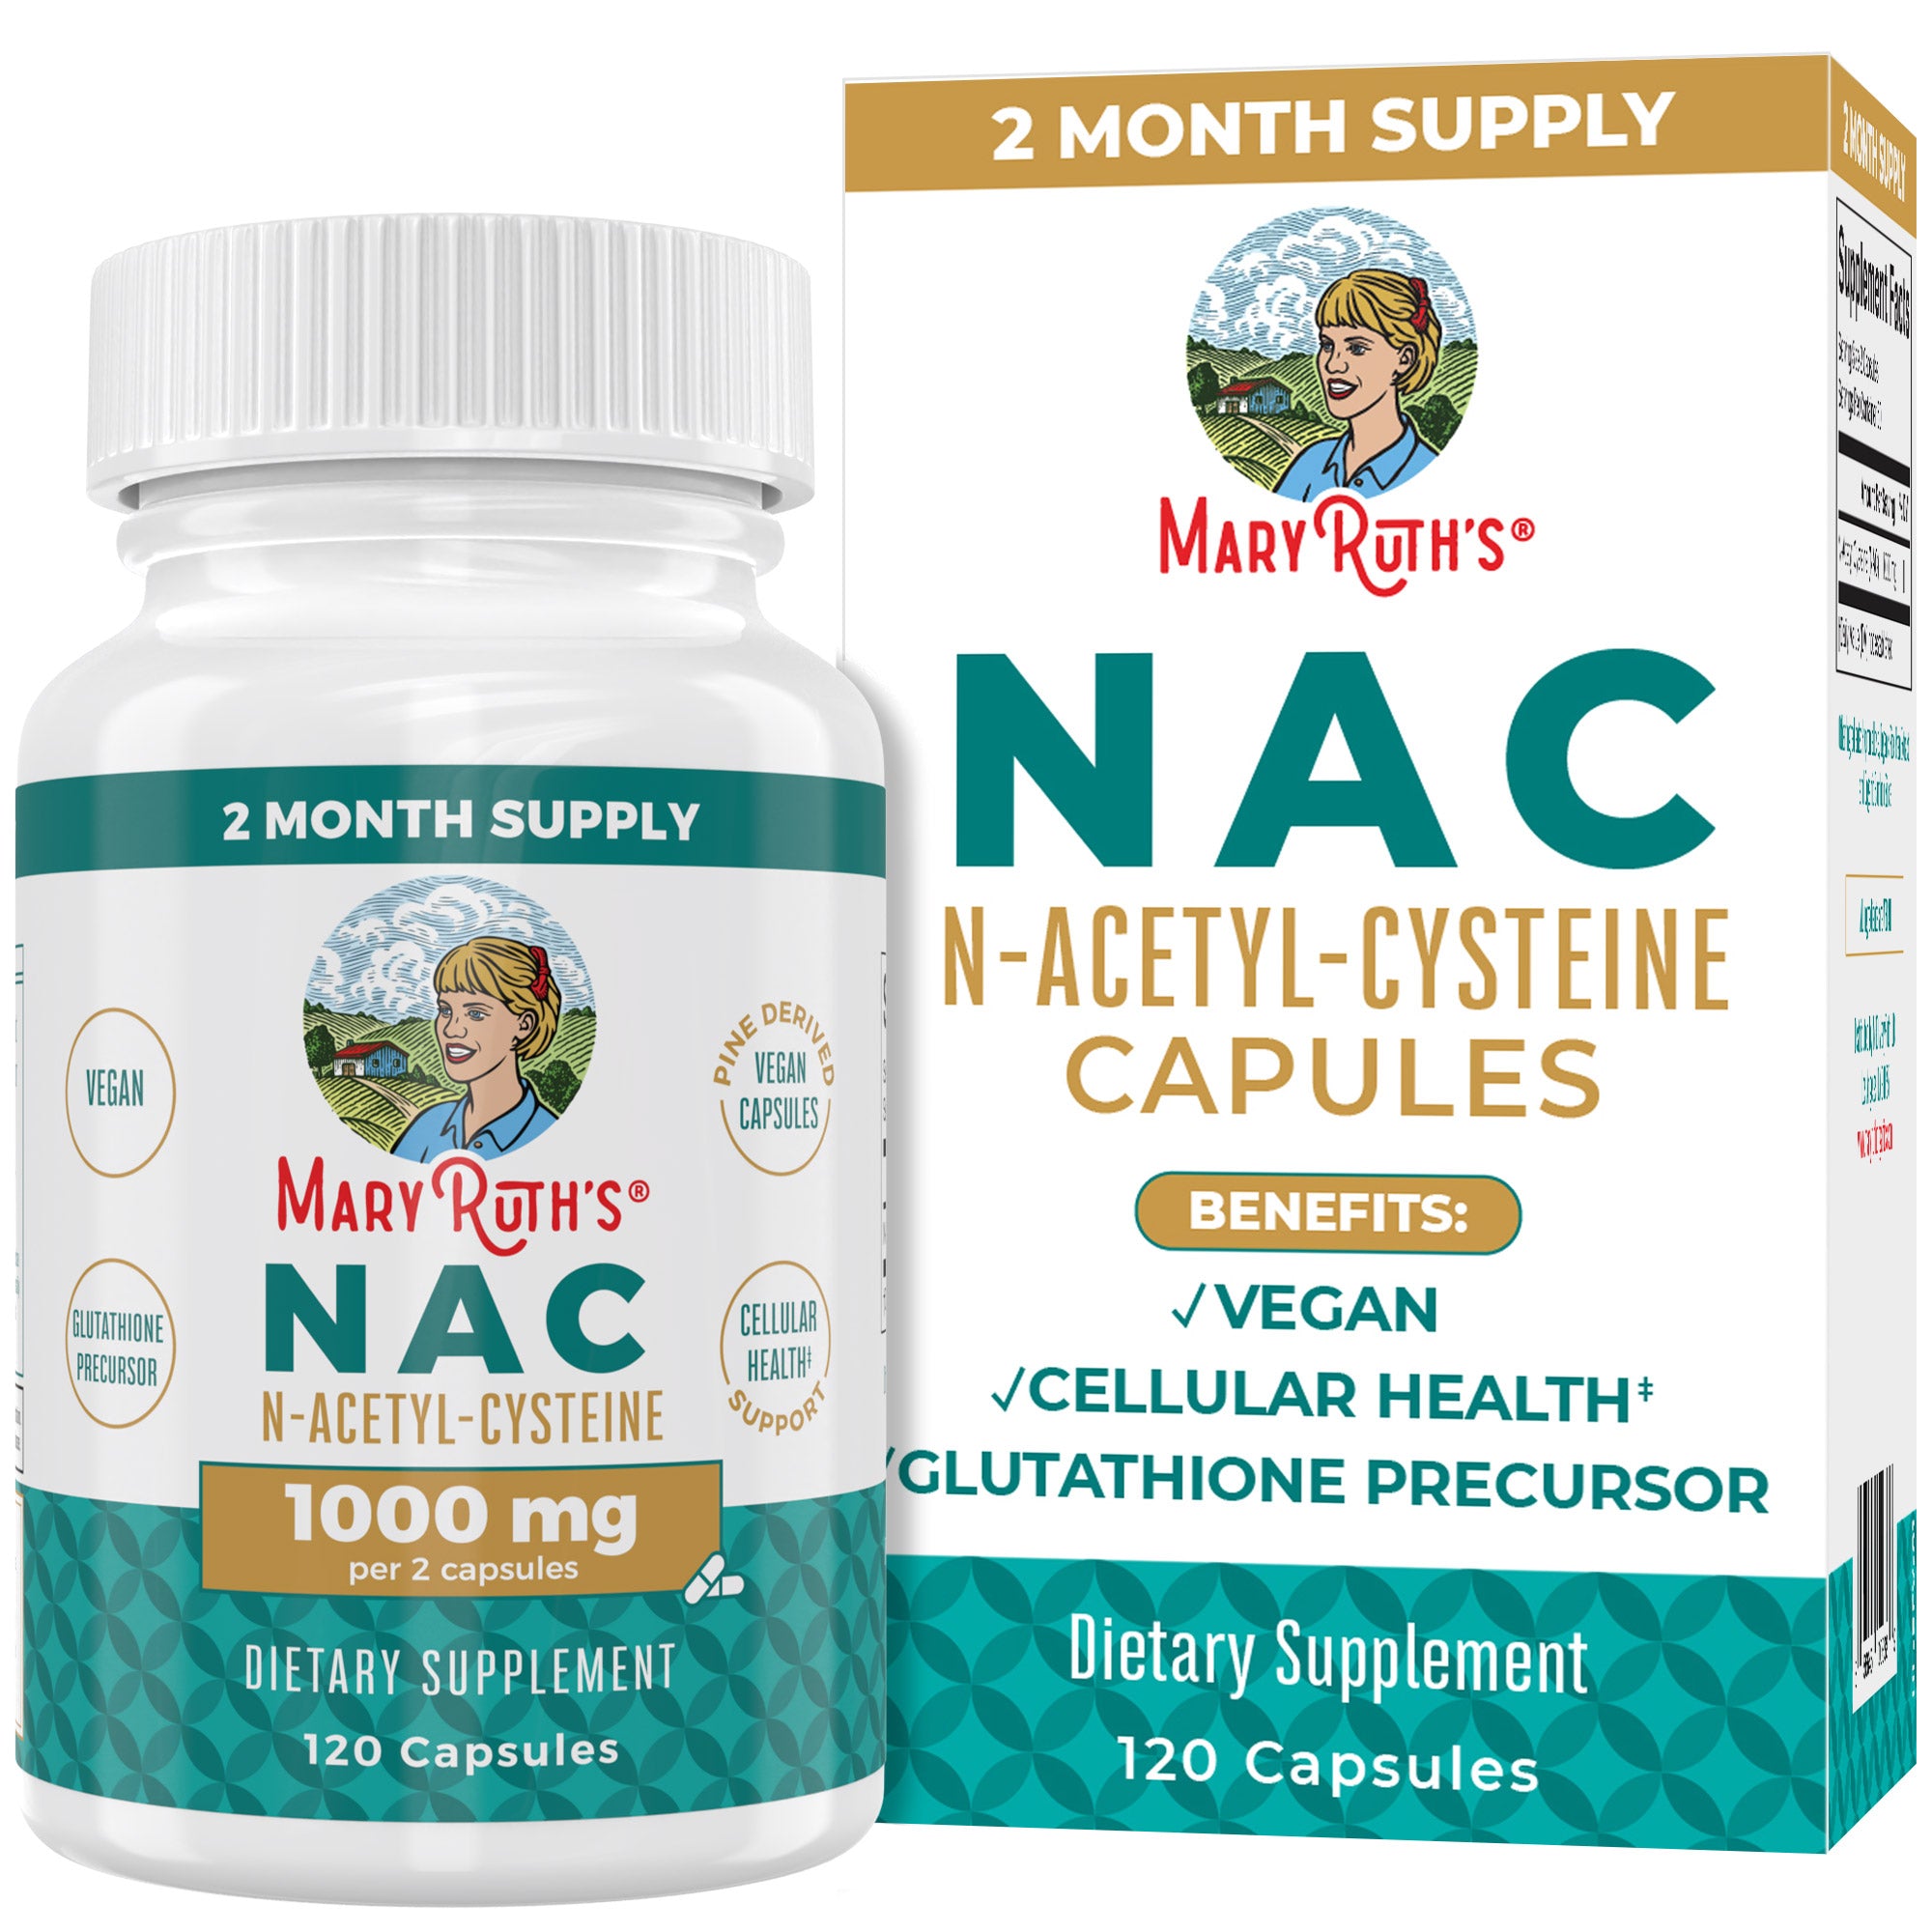 N-acetyl-cysteine (NAC)